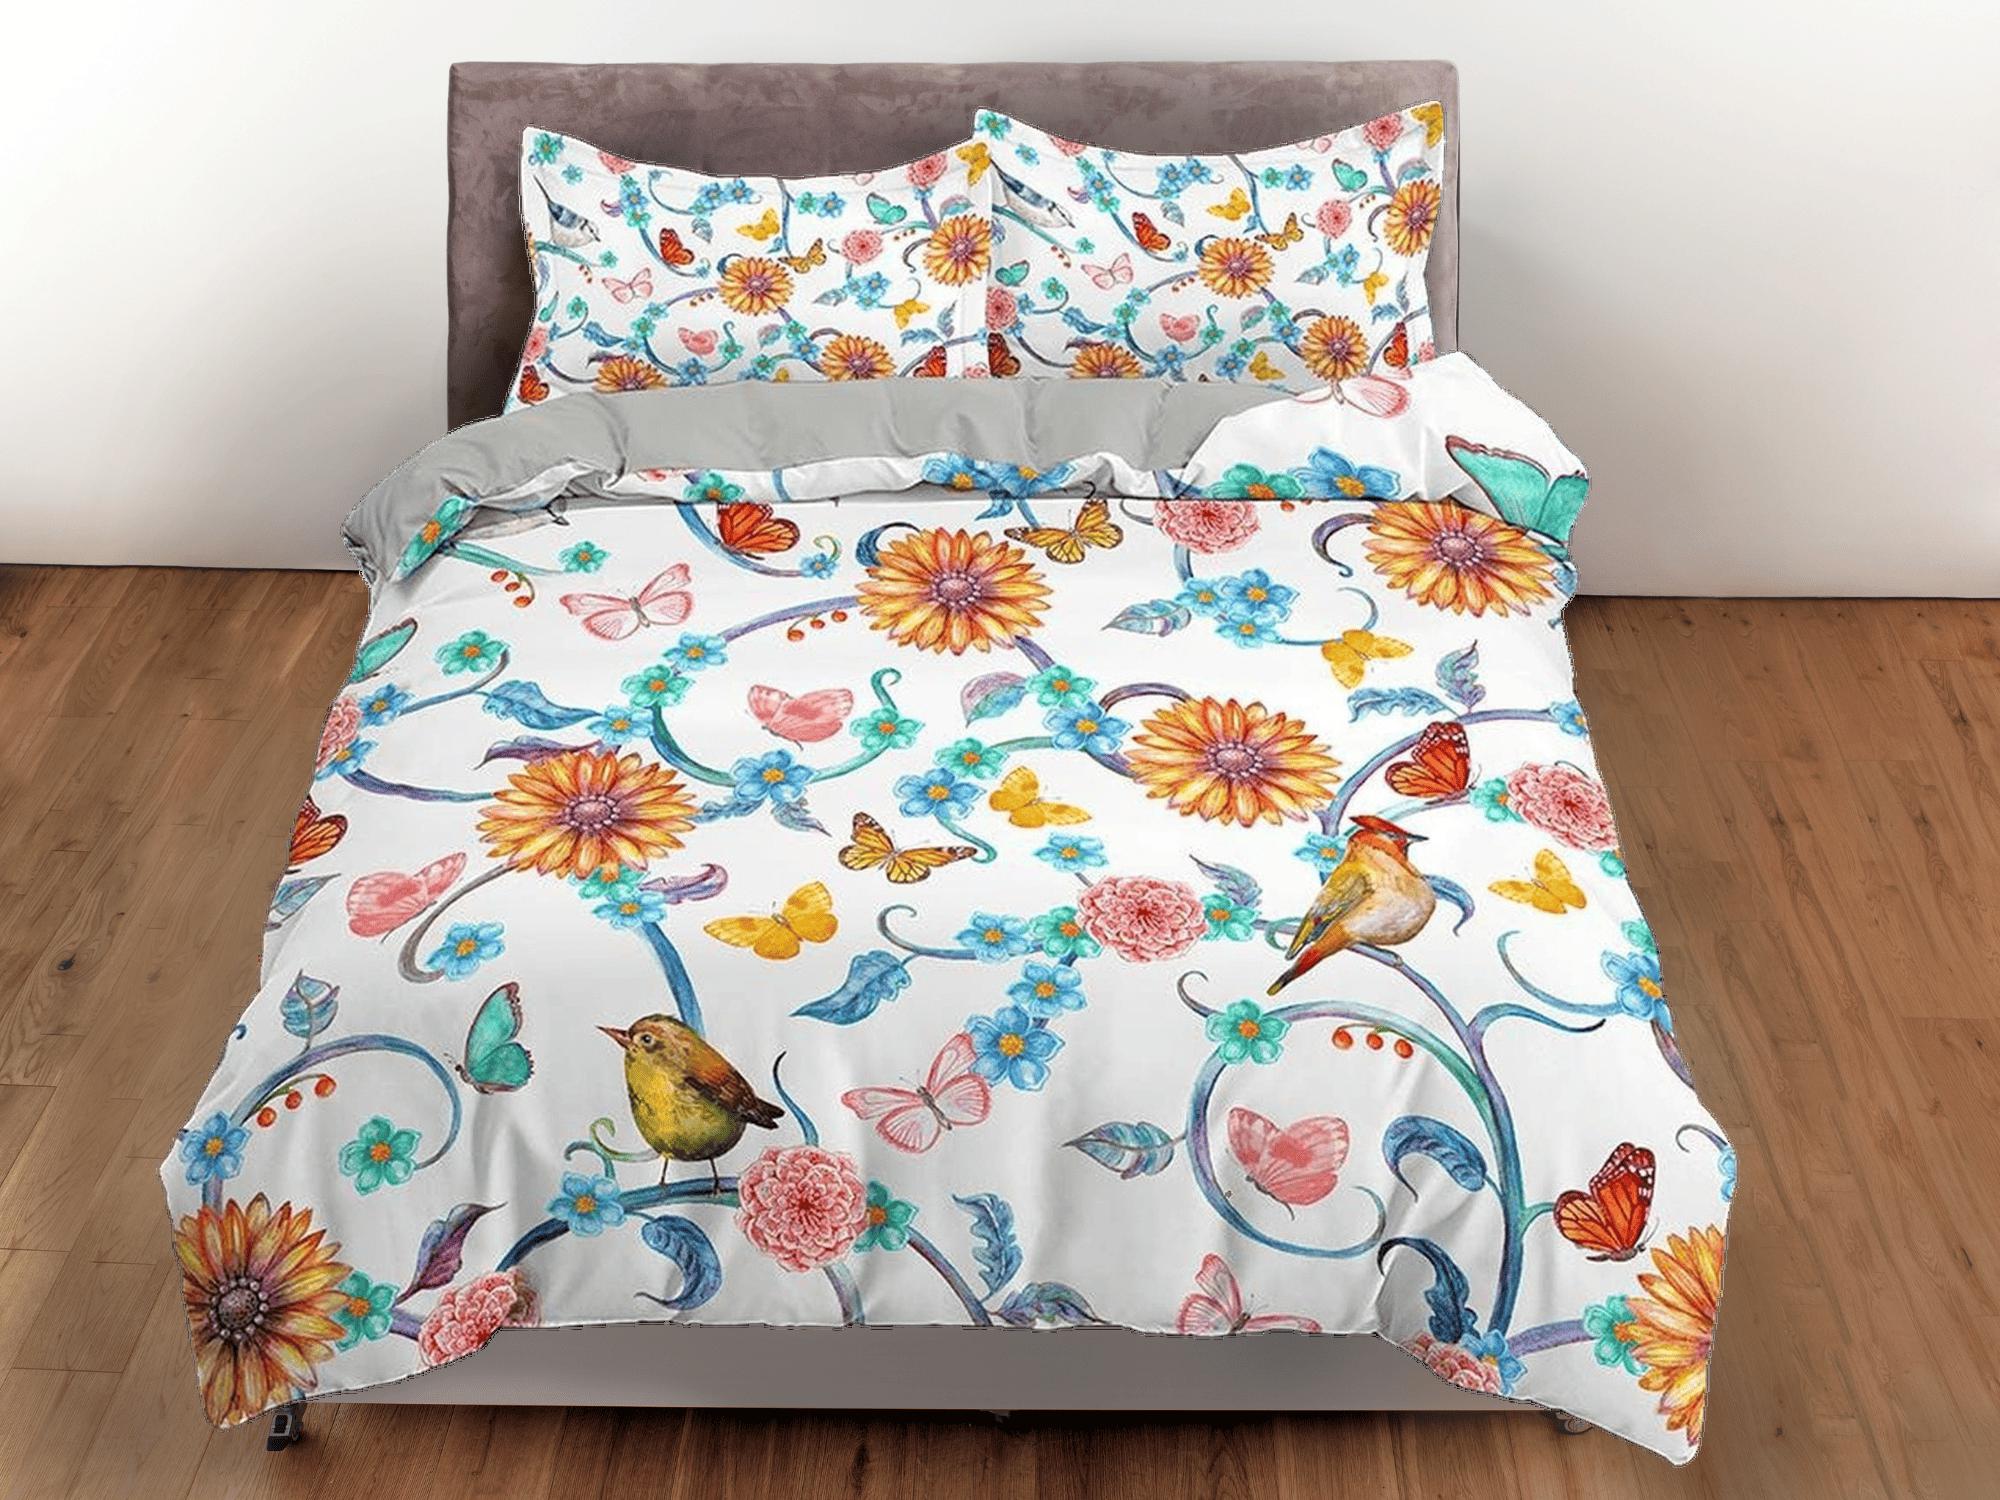 daintyduvet Birds and flowers bedding farmhouse duvet cover queen, king, boho duvet, designer bedding, aesthetic bedding, maximalist full size bedding